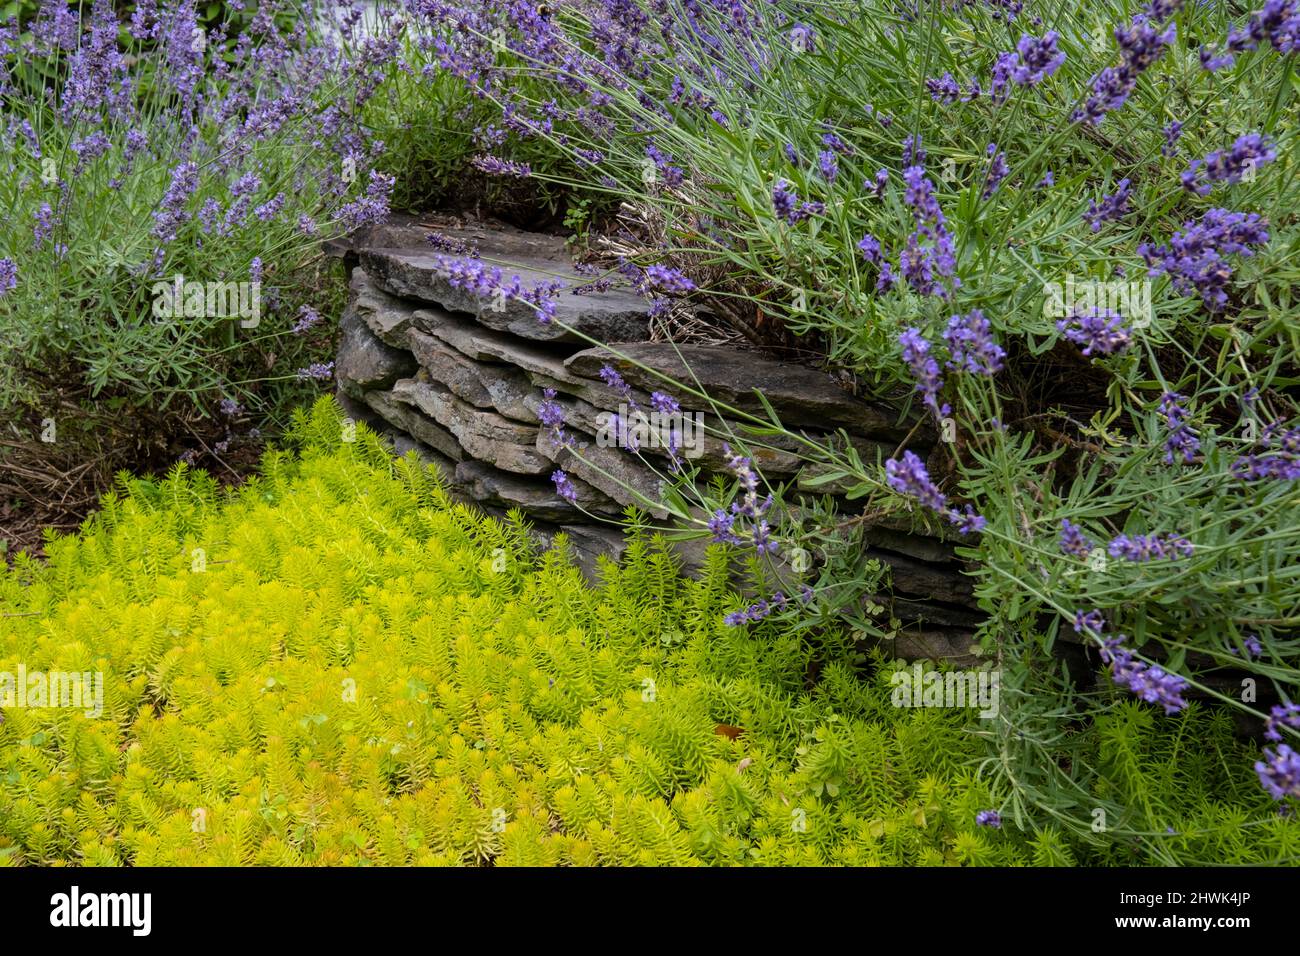 Virginia Garden. Sedum reflexum, Angelina, im Vordergrund, Lavendel im Hintergrund. Stockfoto